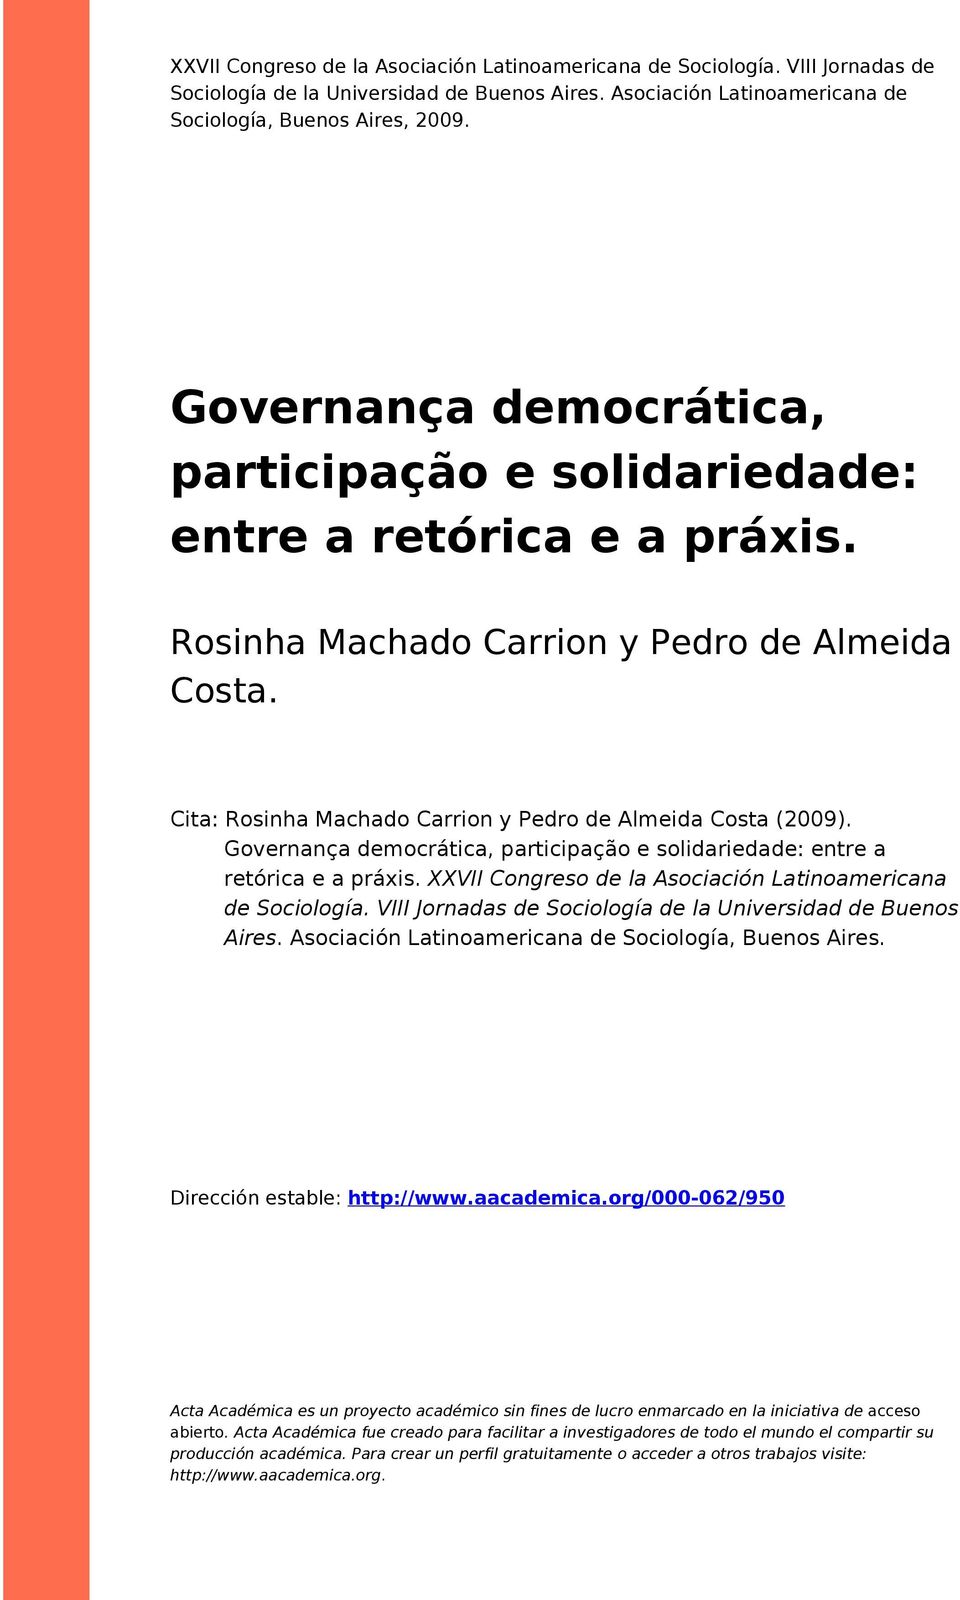 Governança democrática, participação e solidariedade: entre a retórica e a práxis. XXVII Congreso de la Asociación Latinoamericana de Sociología.